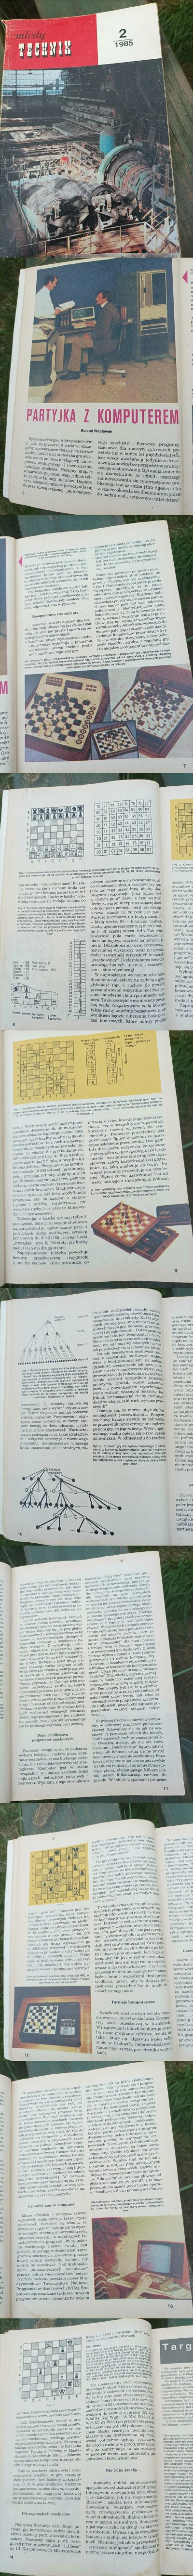 EmcePomidor2 - Kiedy szachiści bili jeszcze maszynę, Młody Technik 1985/2

#szachy ...